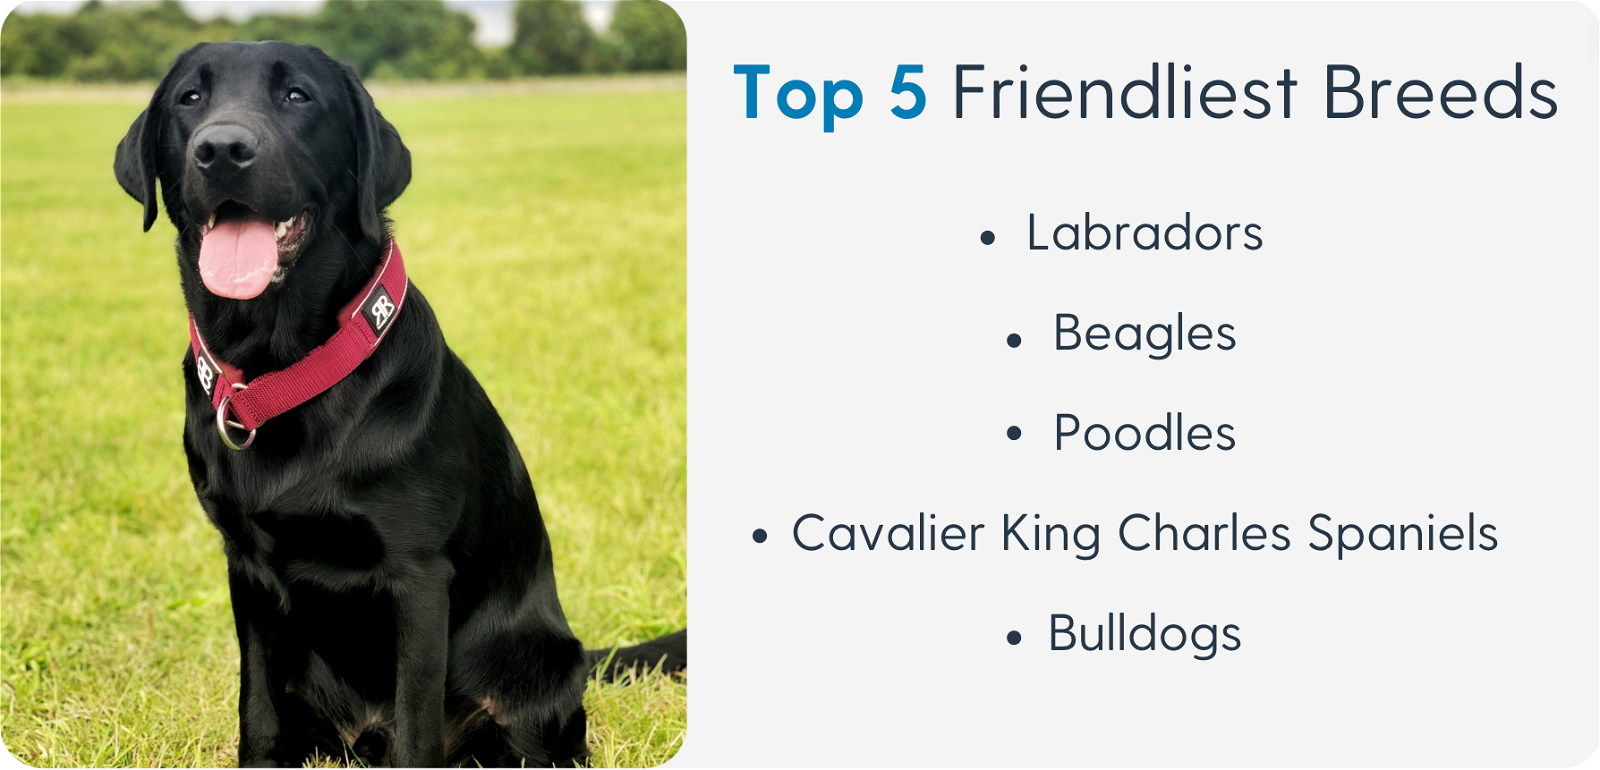 Top 5 Friendliest Breeds